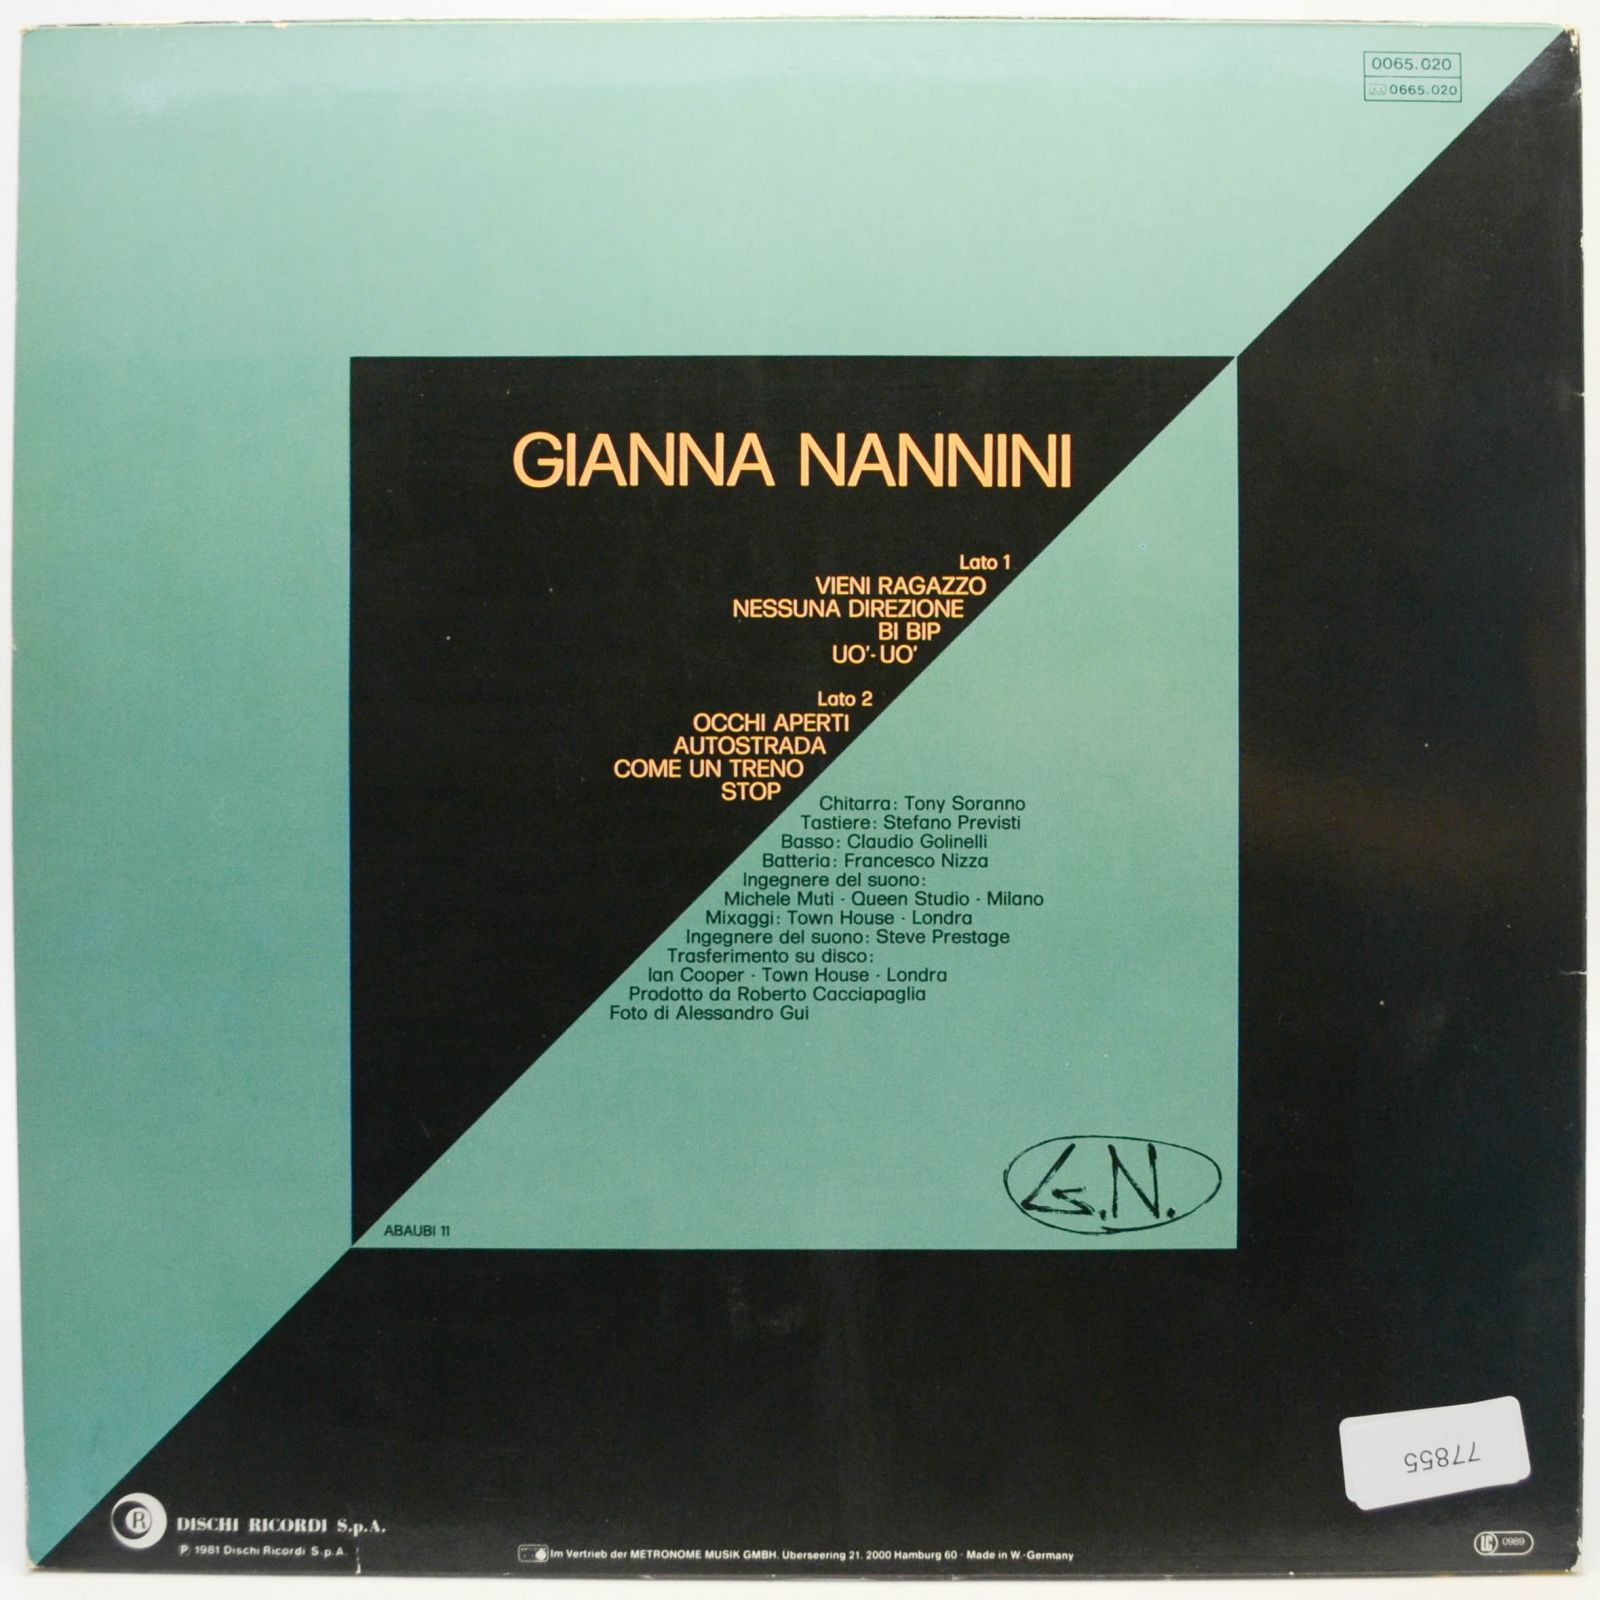 Gianna Nannini — G.N., 1981